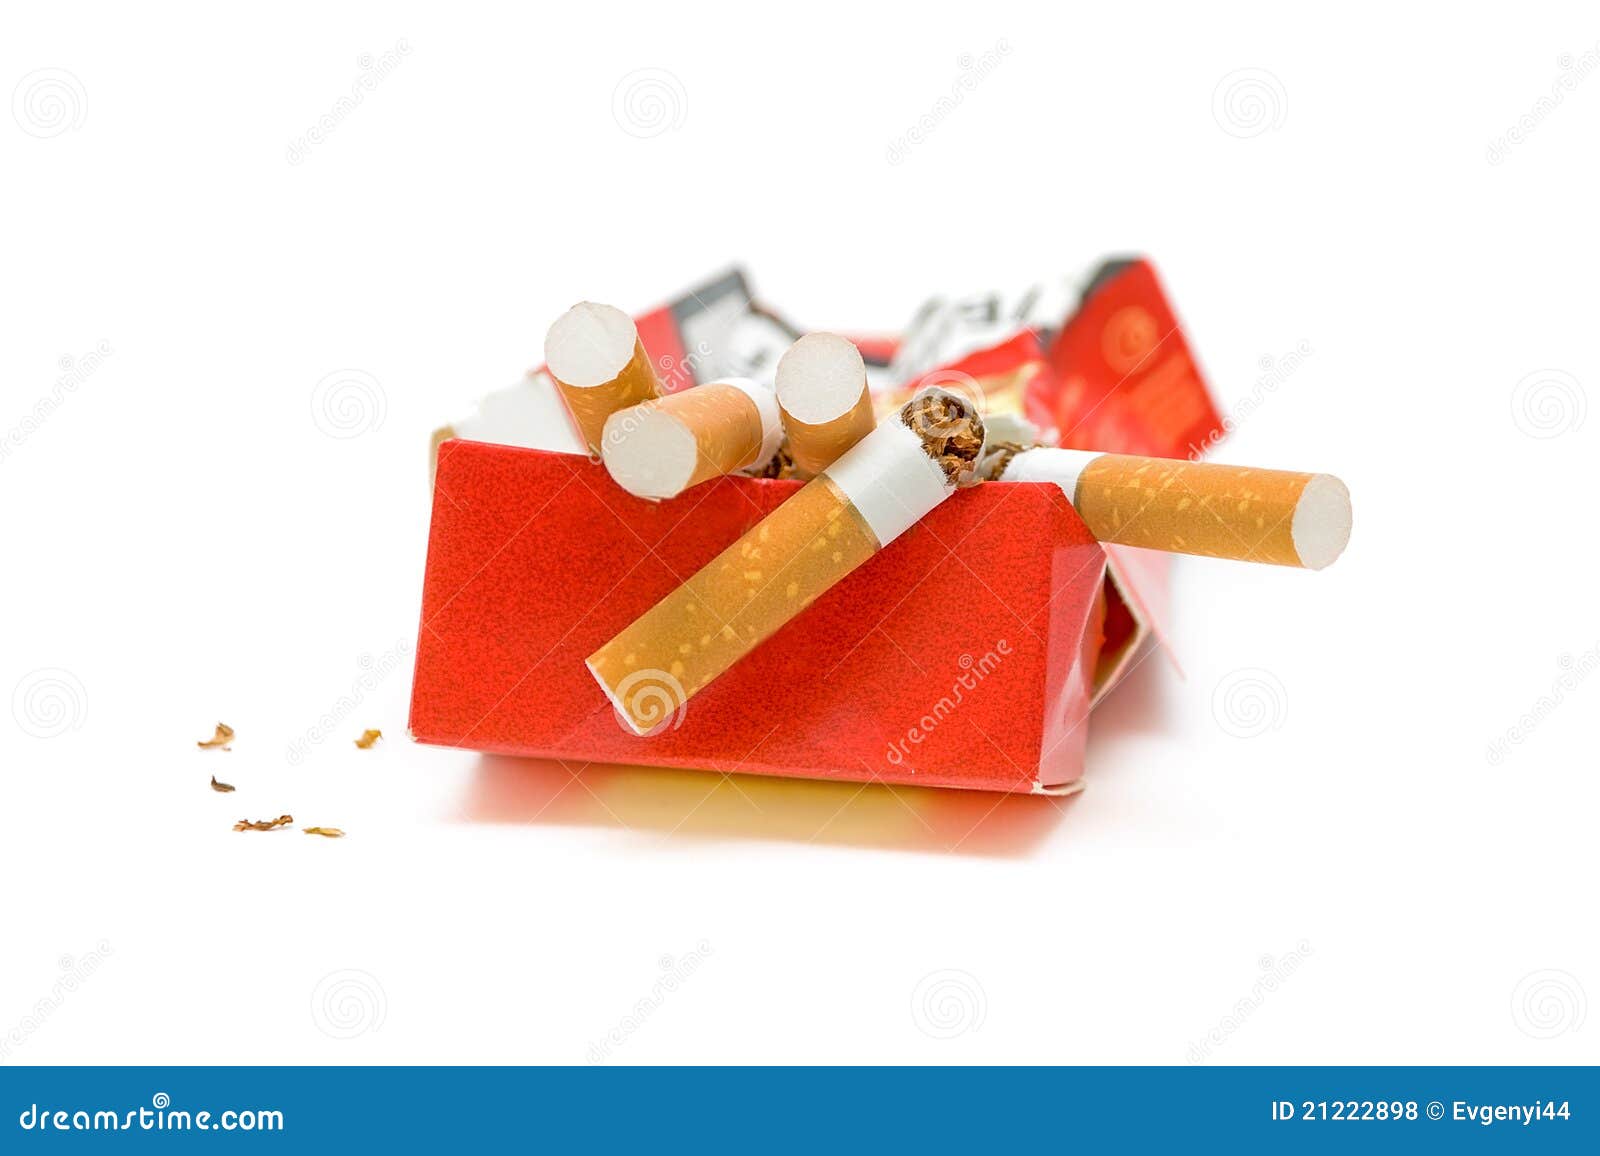 Сигареты для некурящих актеров купить. Смятая пачка сигарет. Мятая пачка сигарет фото. Смятая пачка сигарет PNG.